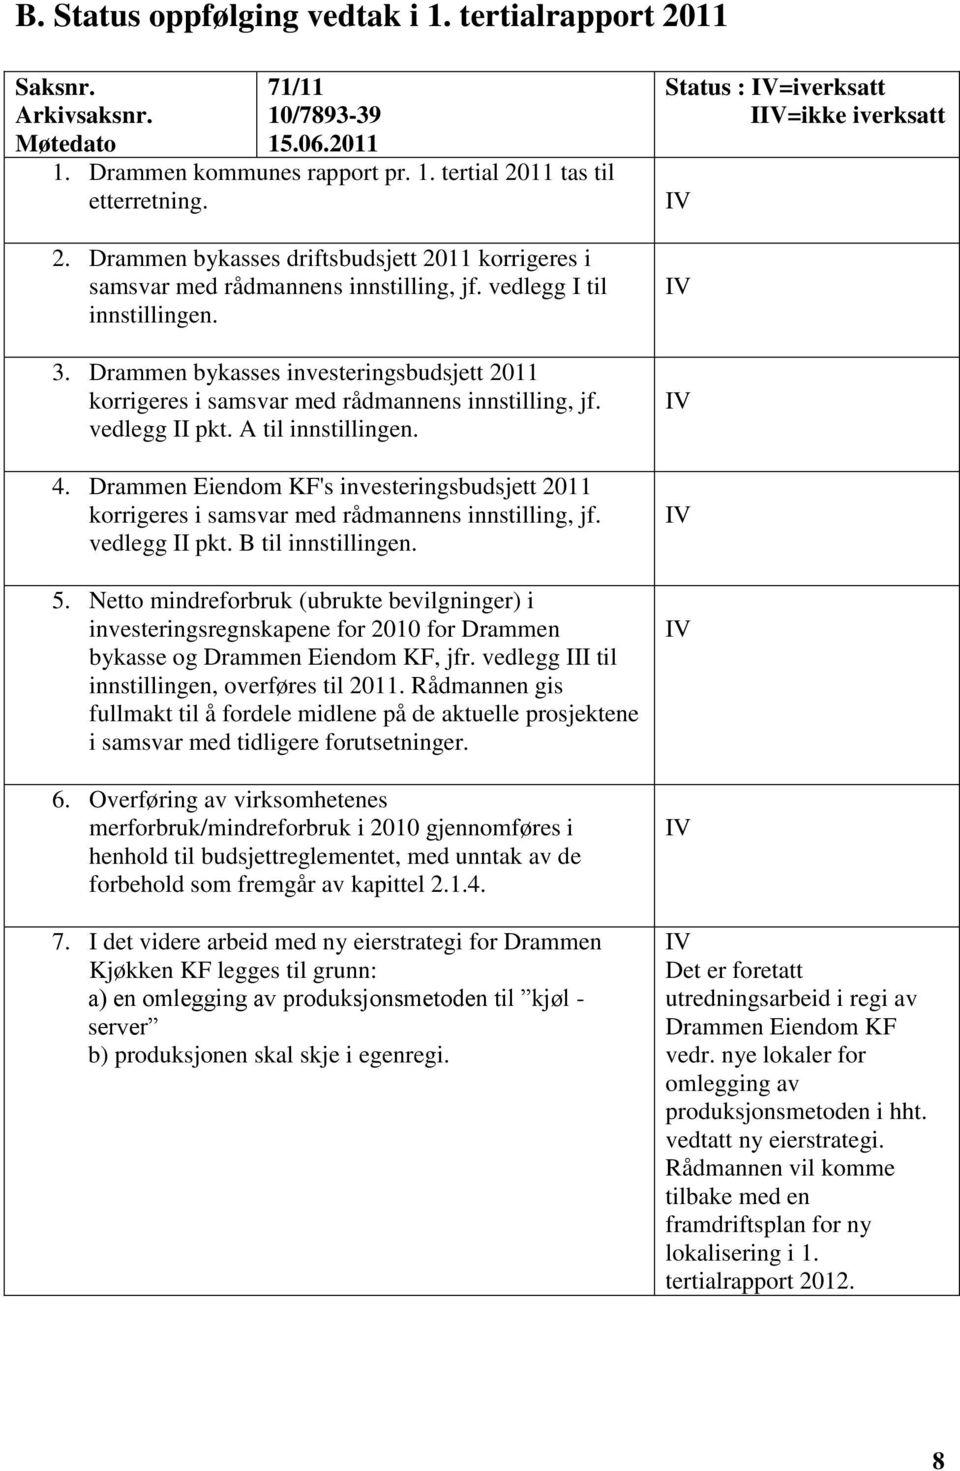 Drammen Eiendom KF's investeringsbudsjett 2011 korrigeres i samsvar med rådmannens innstilling, jf. vedlegg II pkt. B til innstillingen. 5.